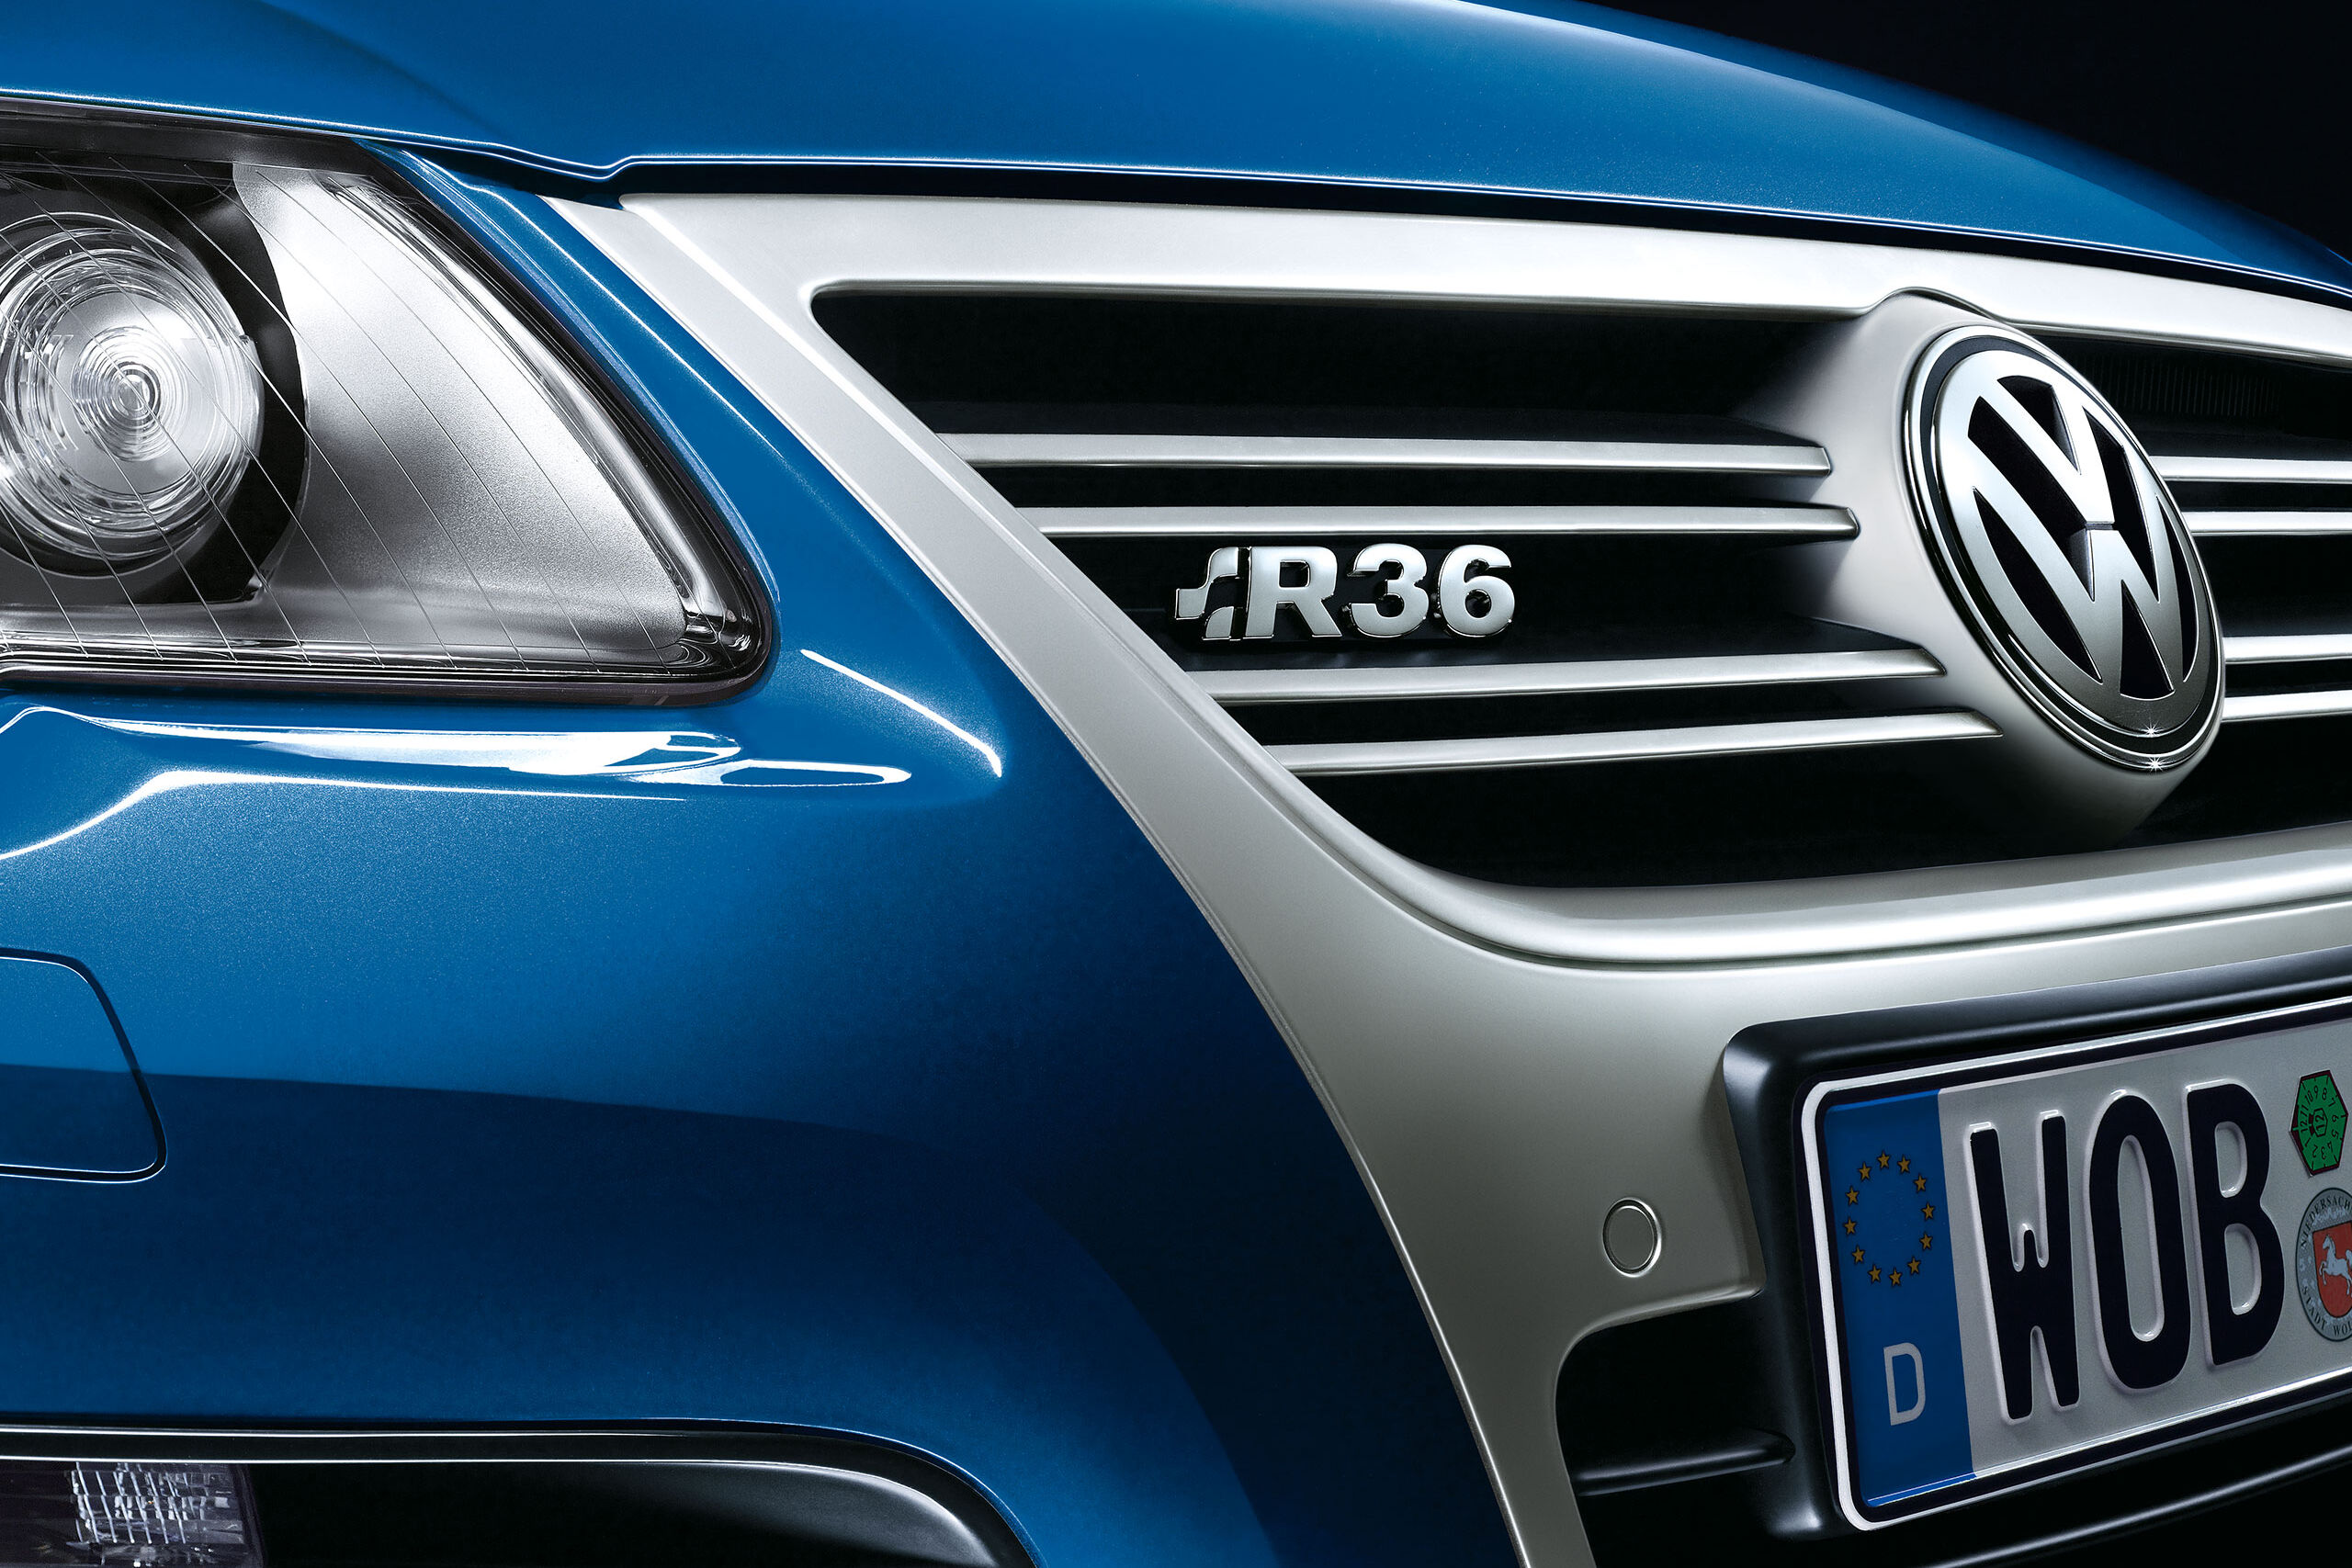 Vista detalhada de um carro VW Passat R36 azul com o emblema "R36" na grelha do radiador.